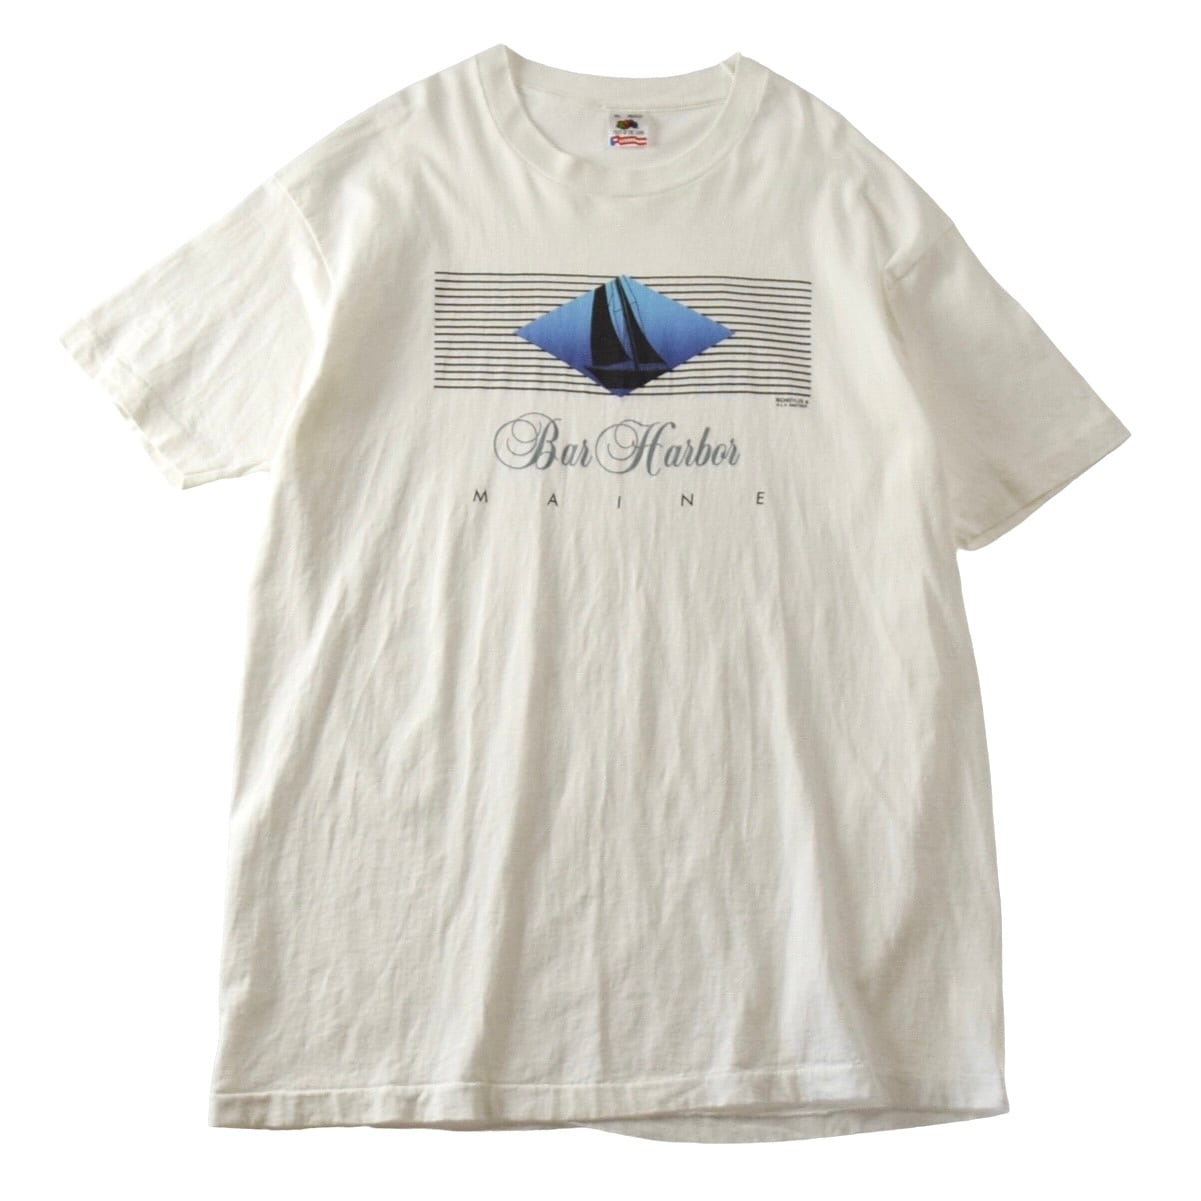 90s アートtシャツ 総柄 フルーツオブザルーム 湖の建物 ビッグシルエット